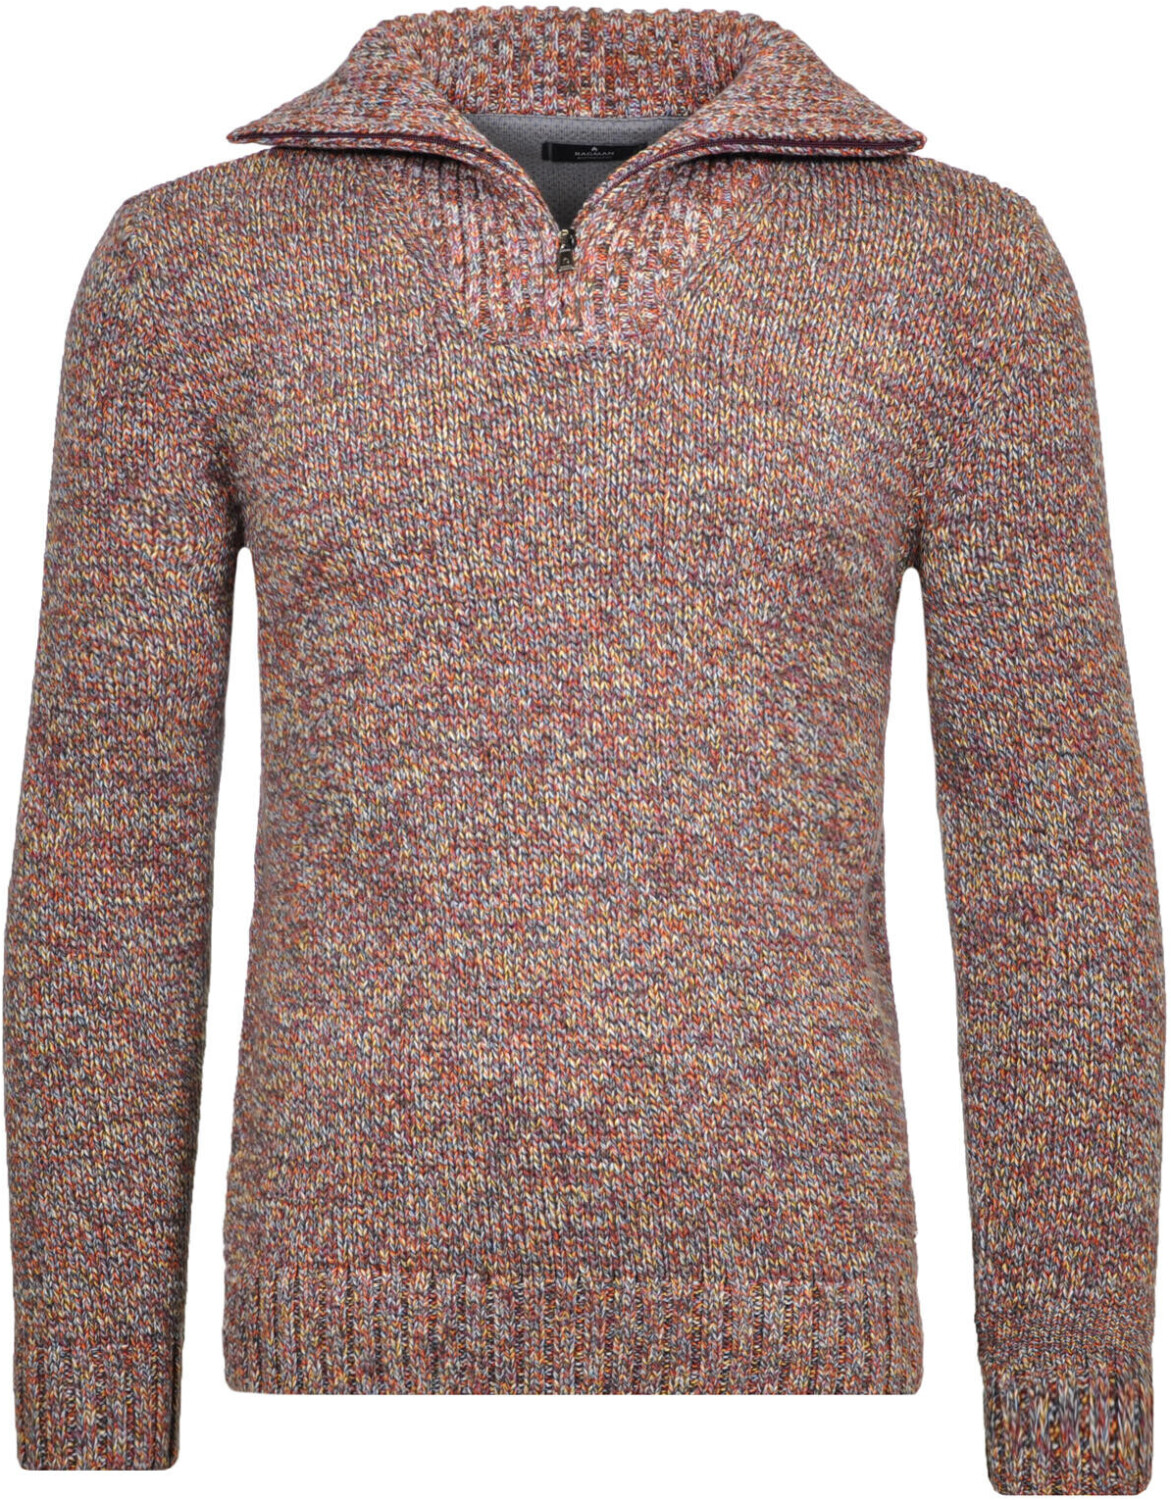 Ragman Tweed-Pullover mit Troyer (502662-169) bordeaux ab 70,00 € |  Preisvergleich bei